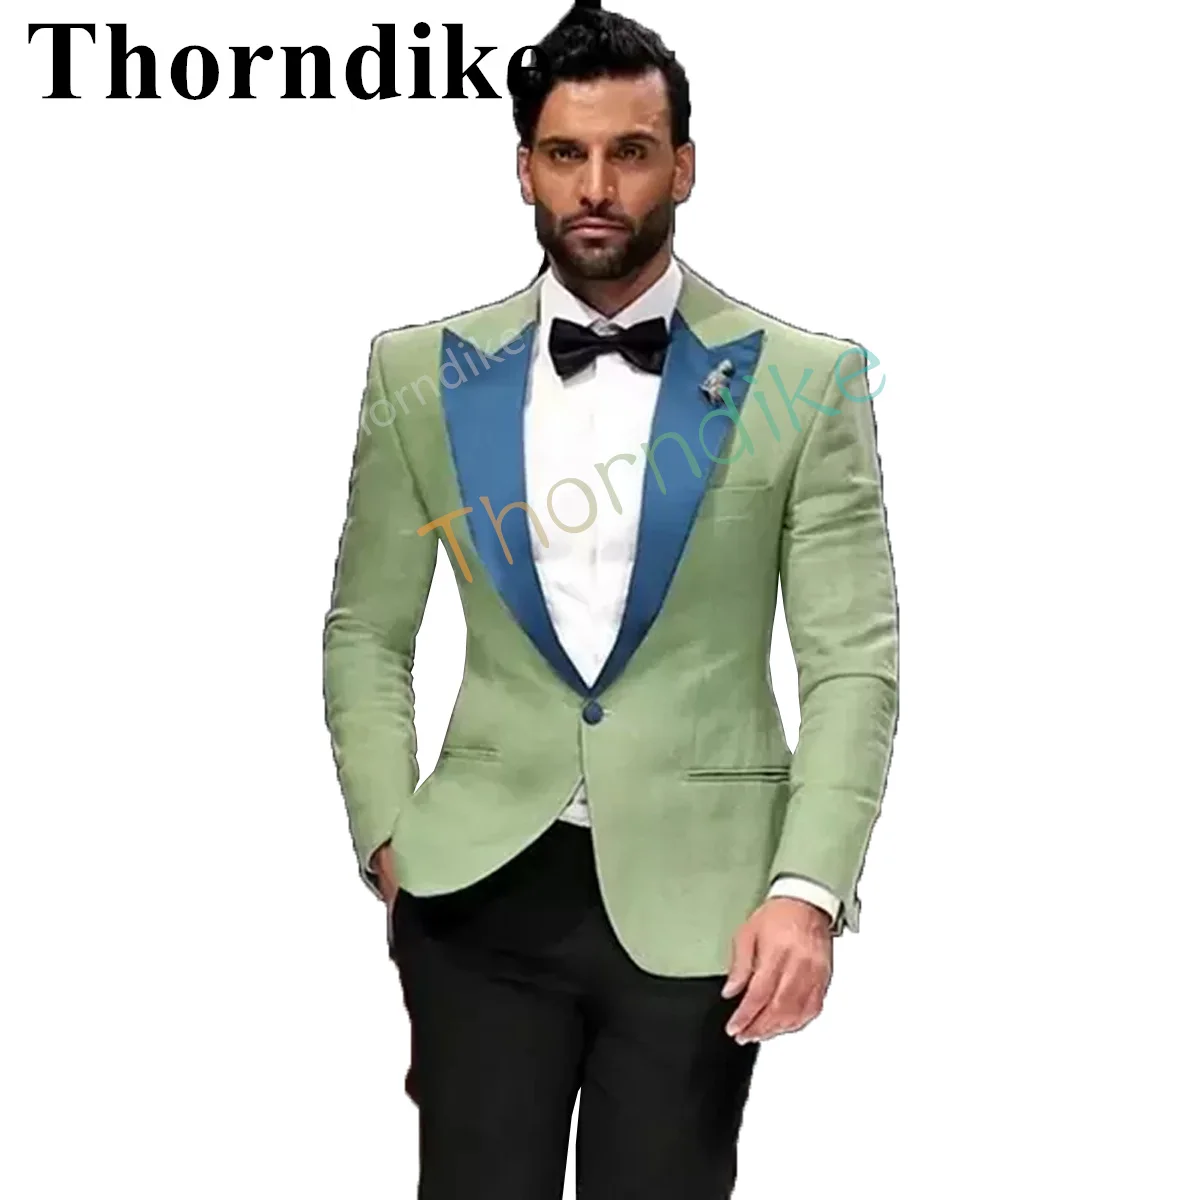 

Модный Стильный блестящий смокинг Thorndike, пиковые лацканы, мужской костюм светло-зеленого цвета, модный костюм из 2 предметов для свадьбы, Blzaer